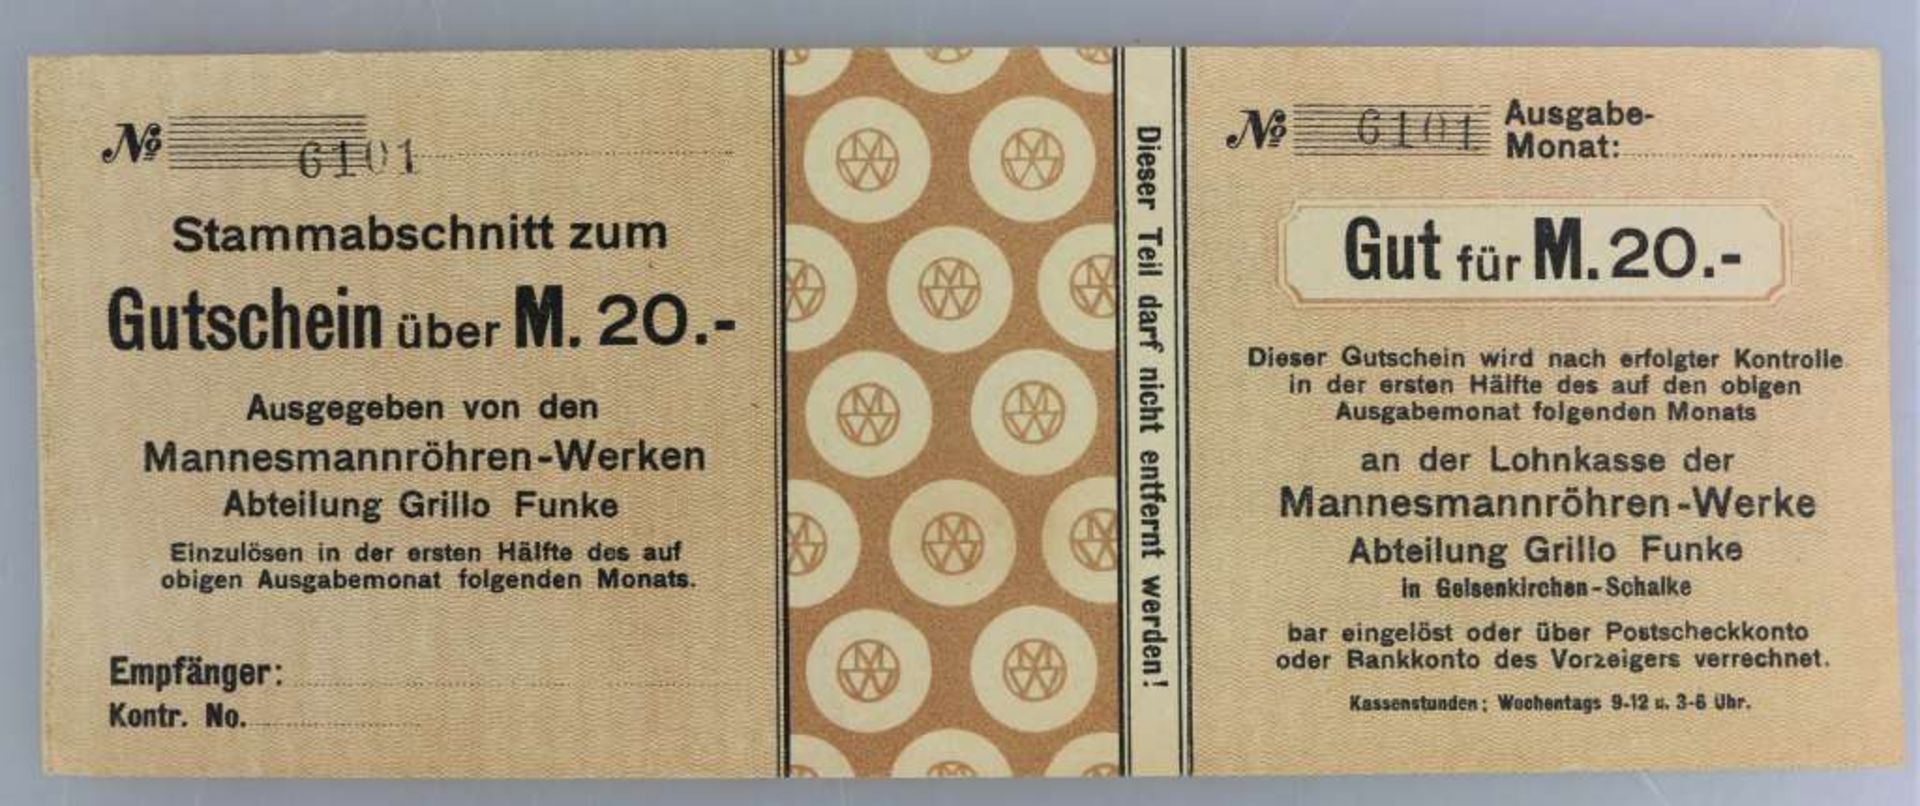 Mannesmannröhren-Werke, 6x 5, 6x 10 und 6x 20 Mark, o.D., entwertet, Konvolut insg. 18 Stück, Abt. - Bild 2 aus 3